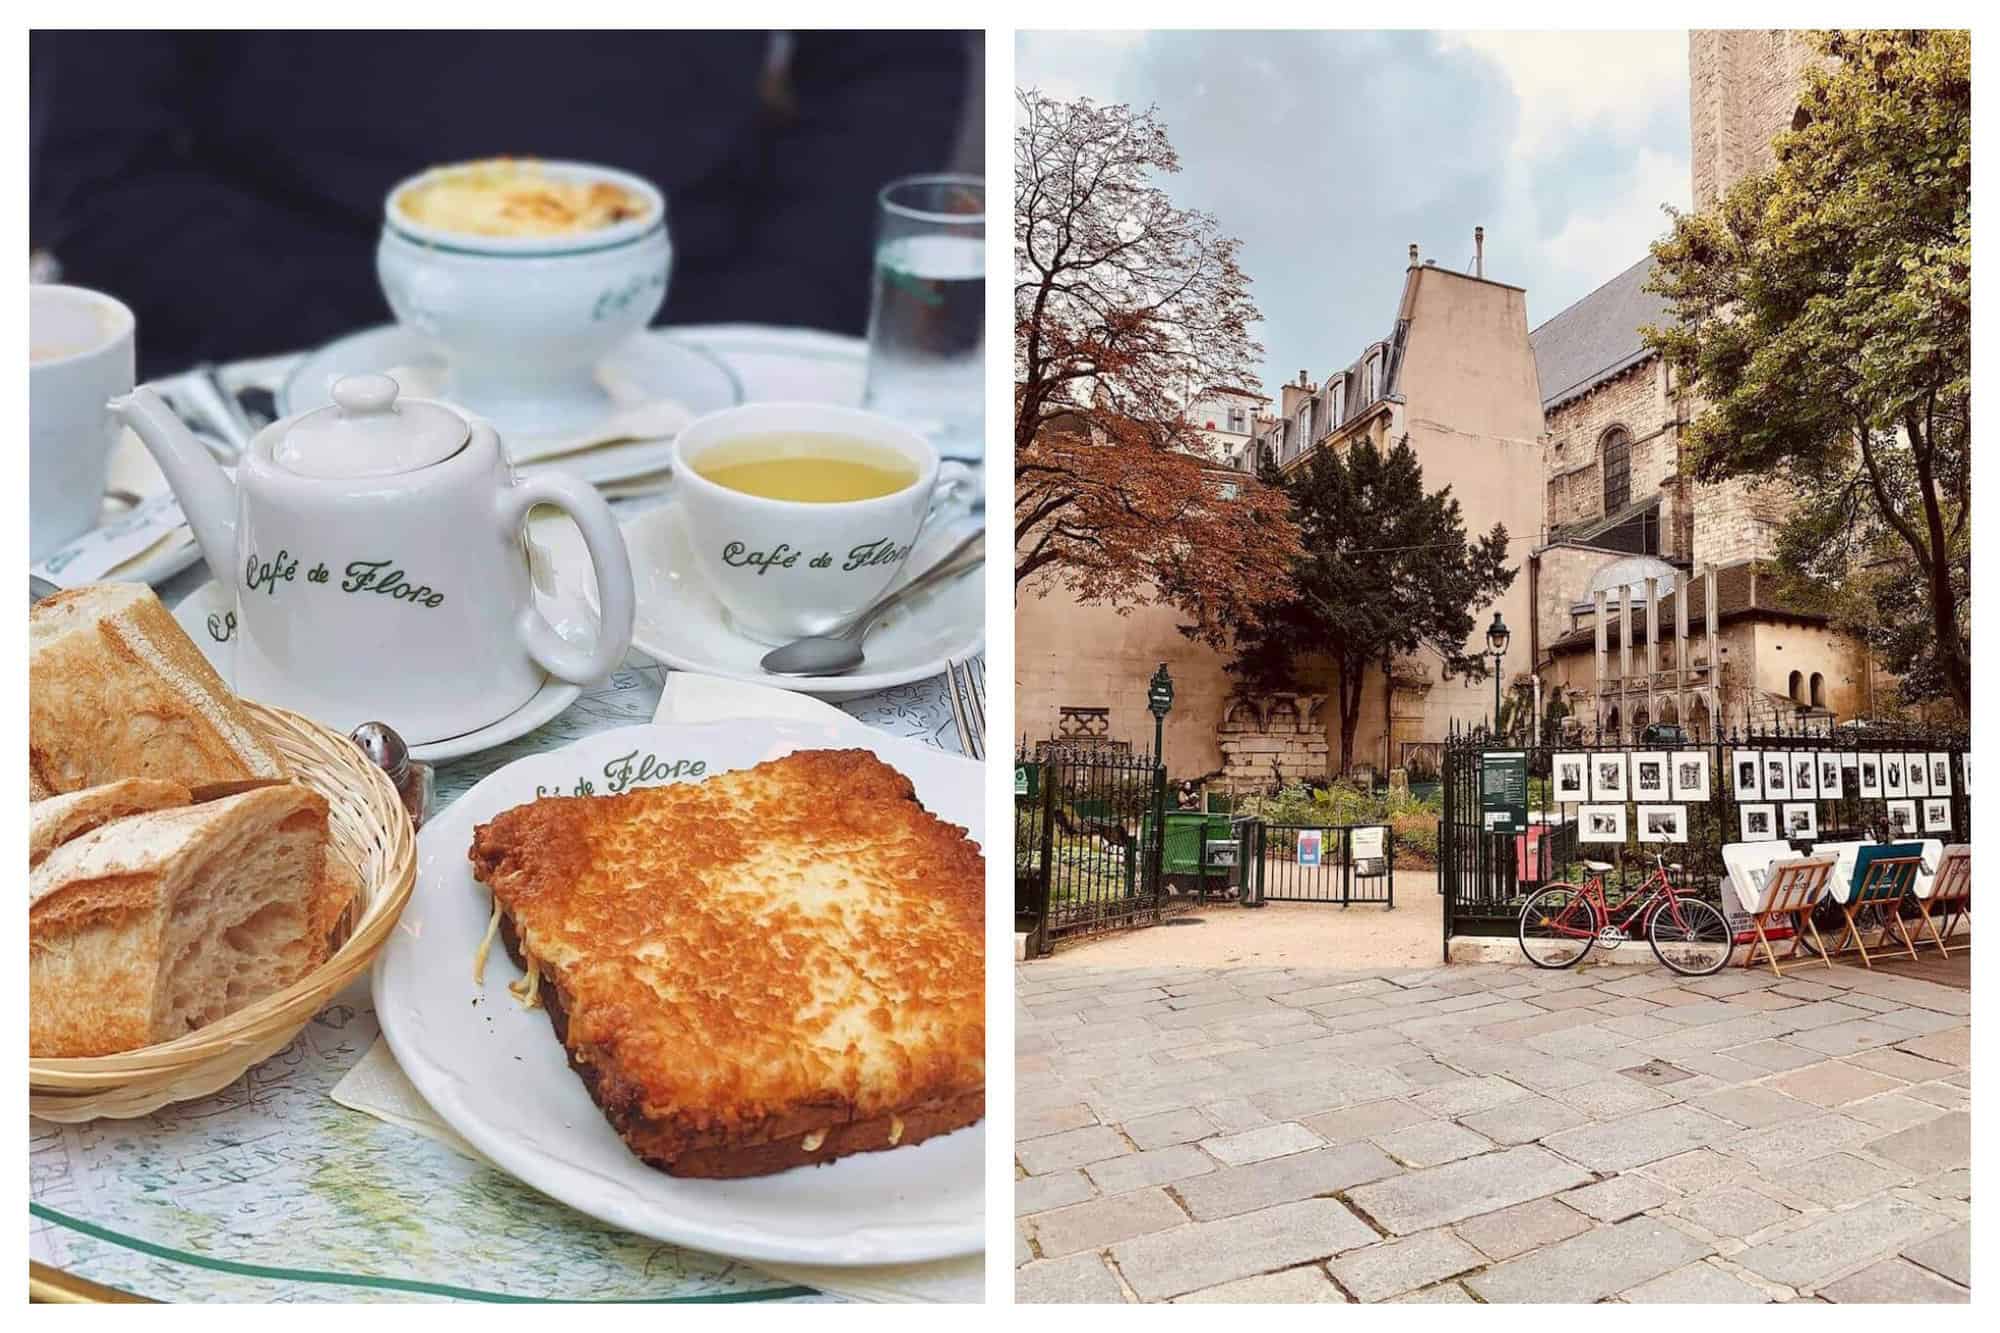 How to Spend Sunday in Paris’s Saint-Germain-des-Prés